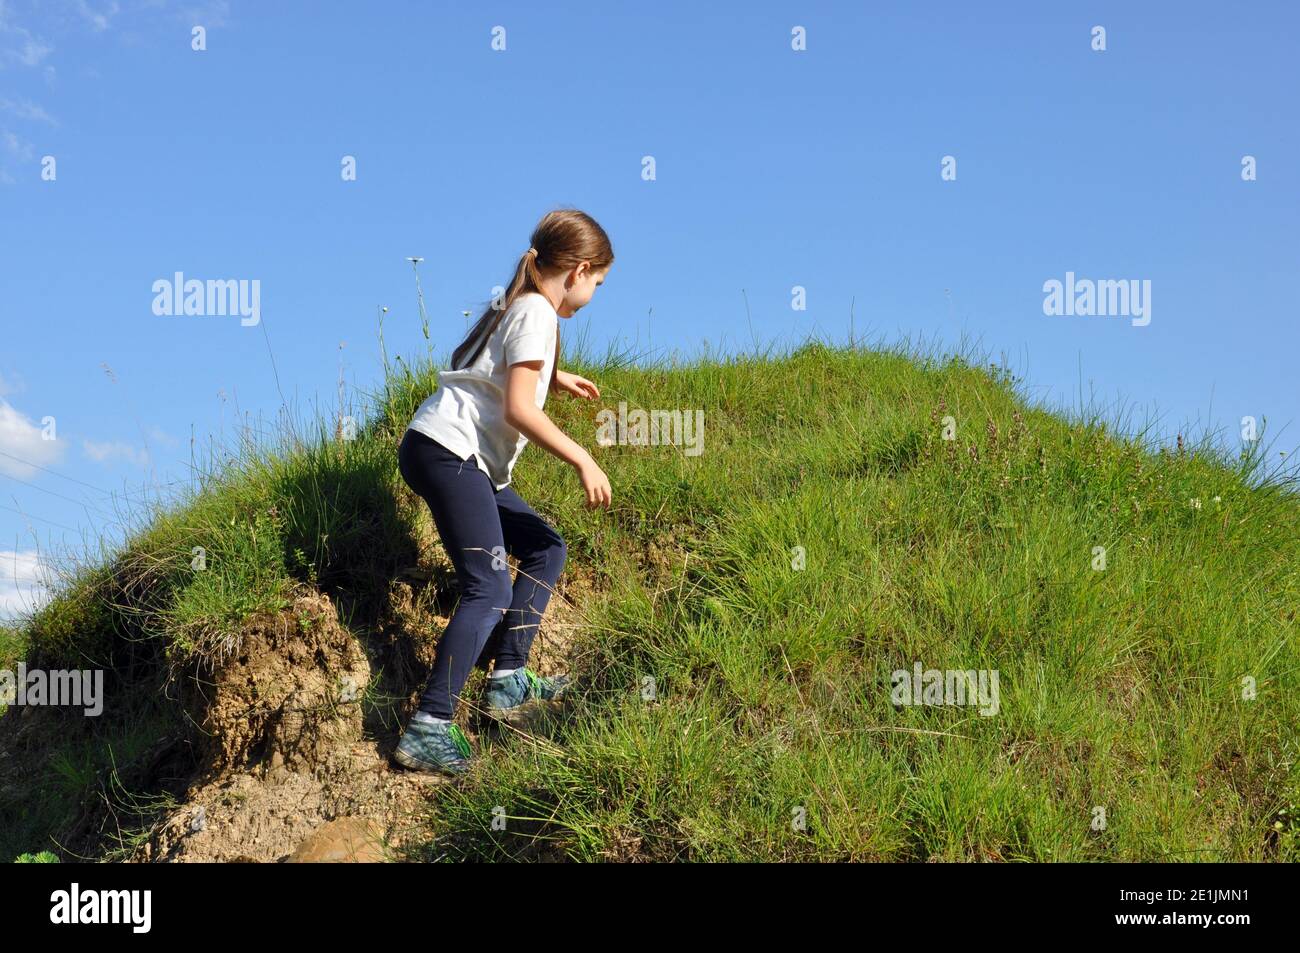 Bambino, ragazza bionda con capelli lunghi, arrampicandosi su una piccola collina con erba verde Foto Stock